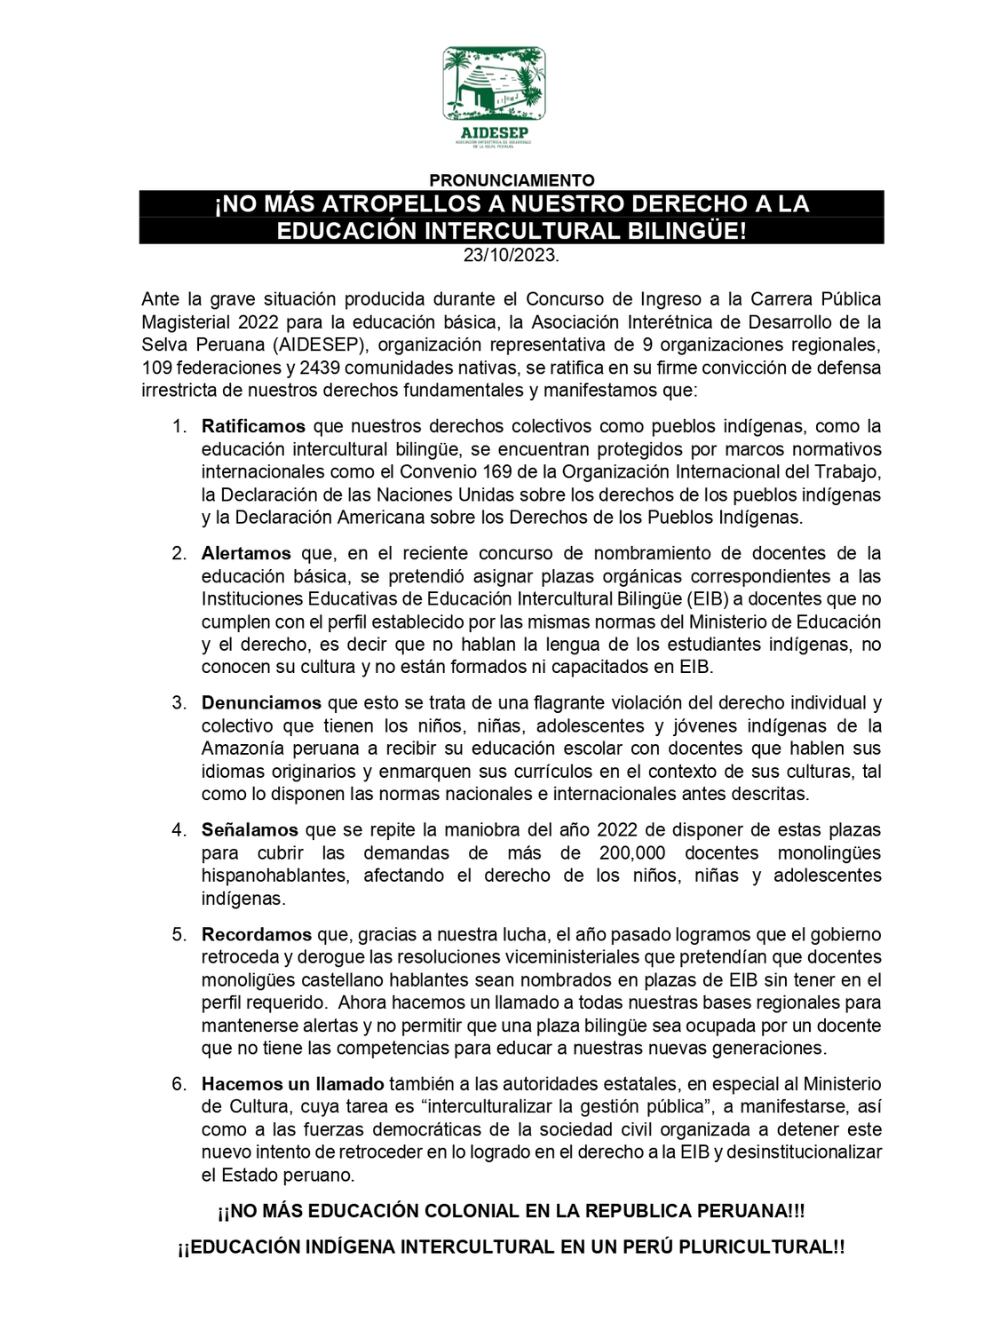 Pronunciamiento de la Asociación Interétnica de Desarrollo de la Selva Peruana (Aidesep).